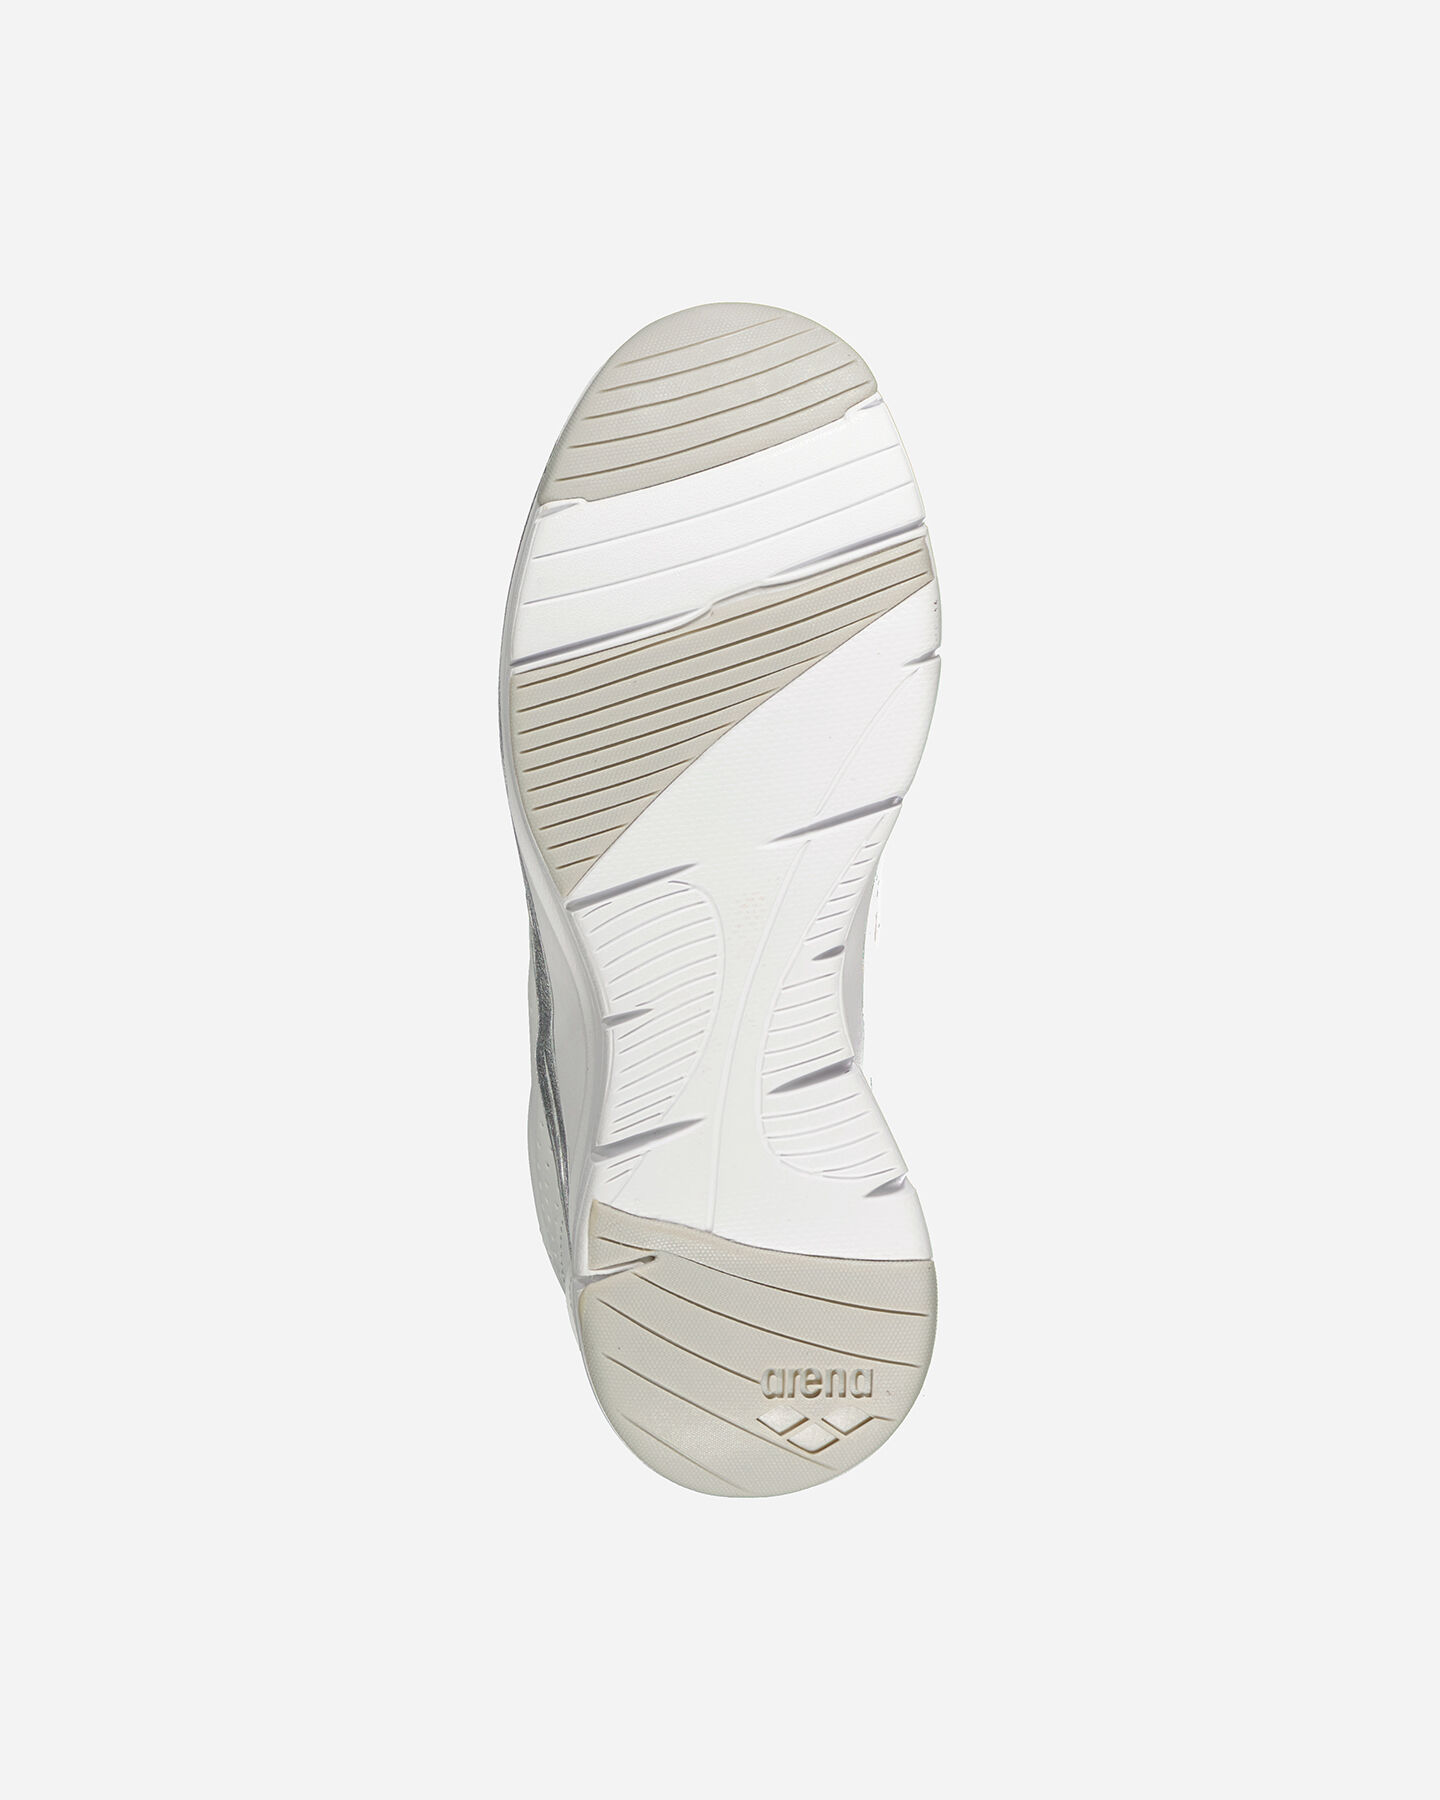  Scarpe sneakers ARENA COMFORT 2.0 W S4095568|01|40 scatto 2